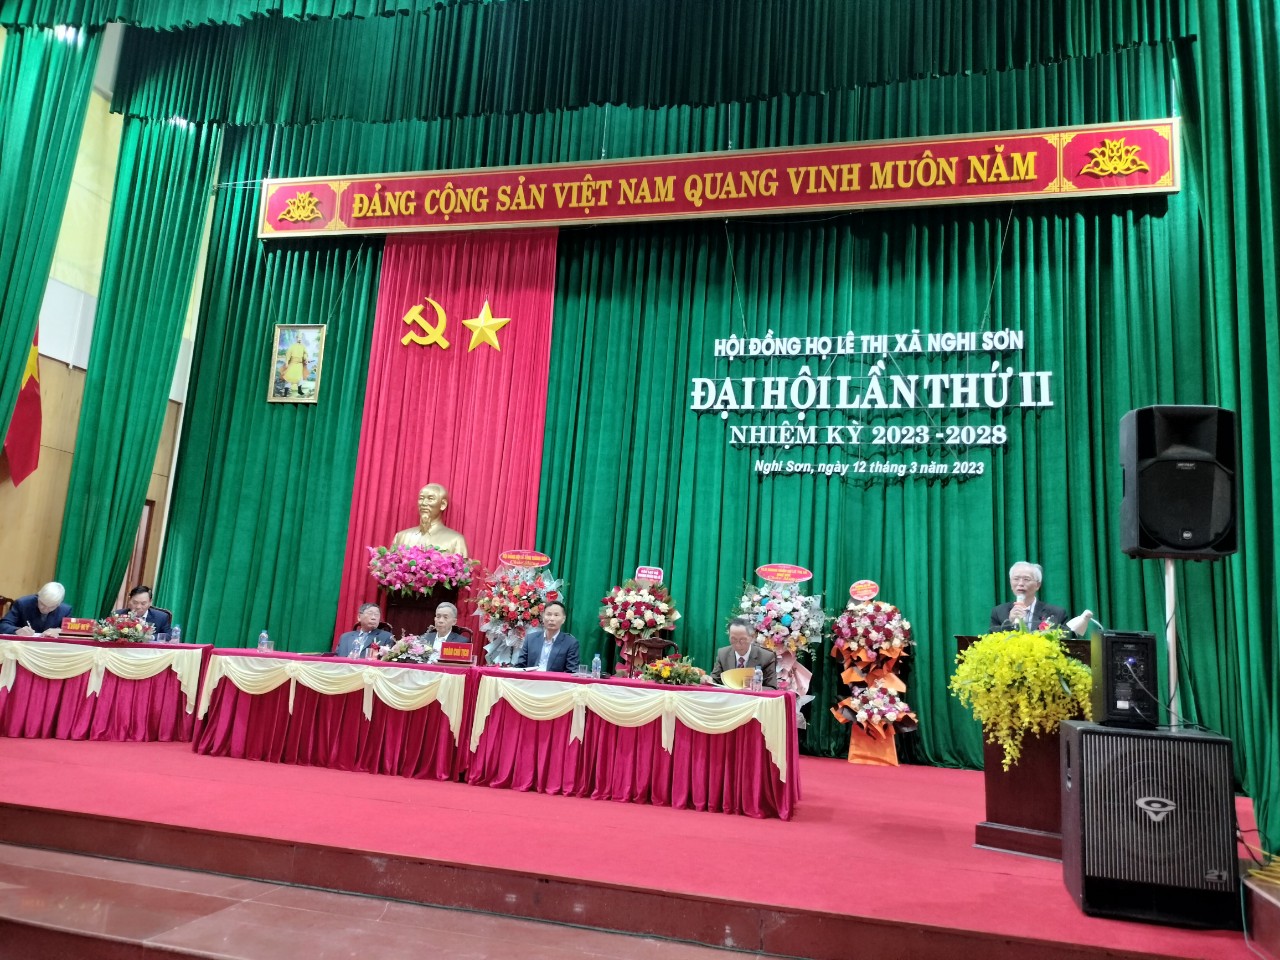 Thanh Hoá: Đại hội Hội đồng Họ Lê thị xã Nghi Sơn lần thứ II, nhiệm kỳ 2023-2028 được tổ chức